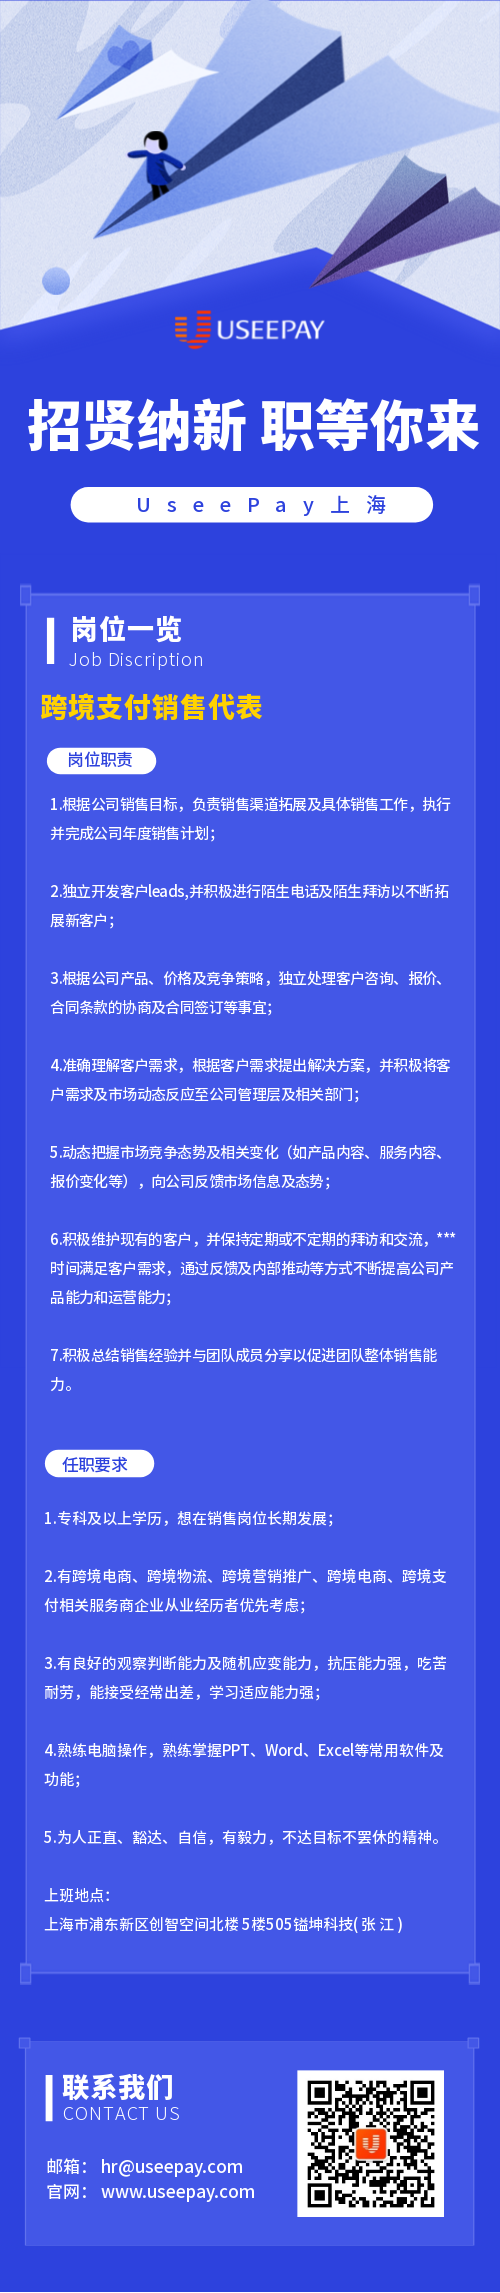 【上海】UseePay人才招聘-跨境支付销售代表